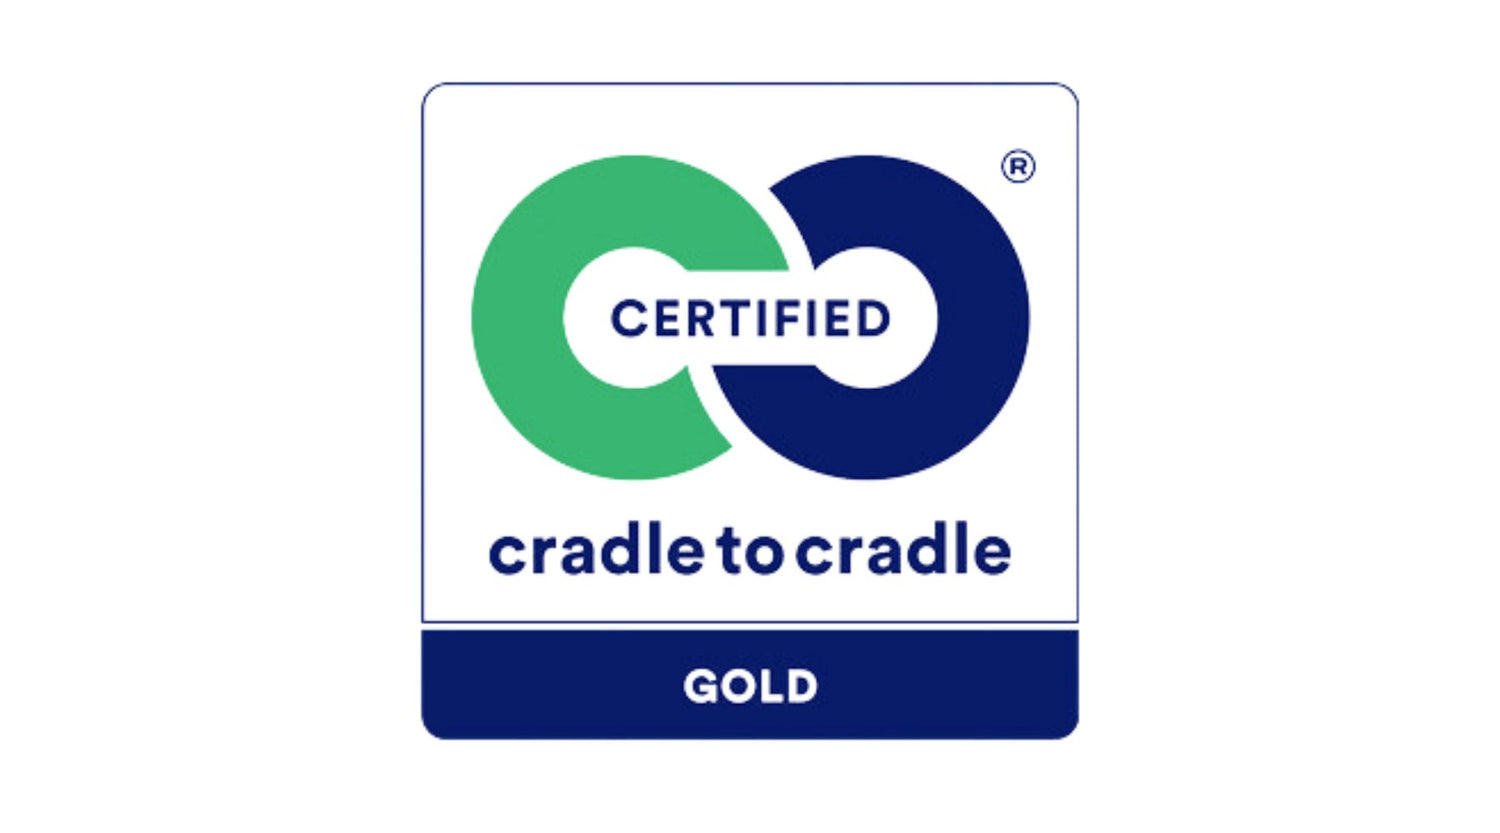 cradle to cradle certifikat i grøn og blå farver 